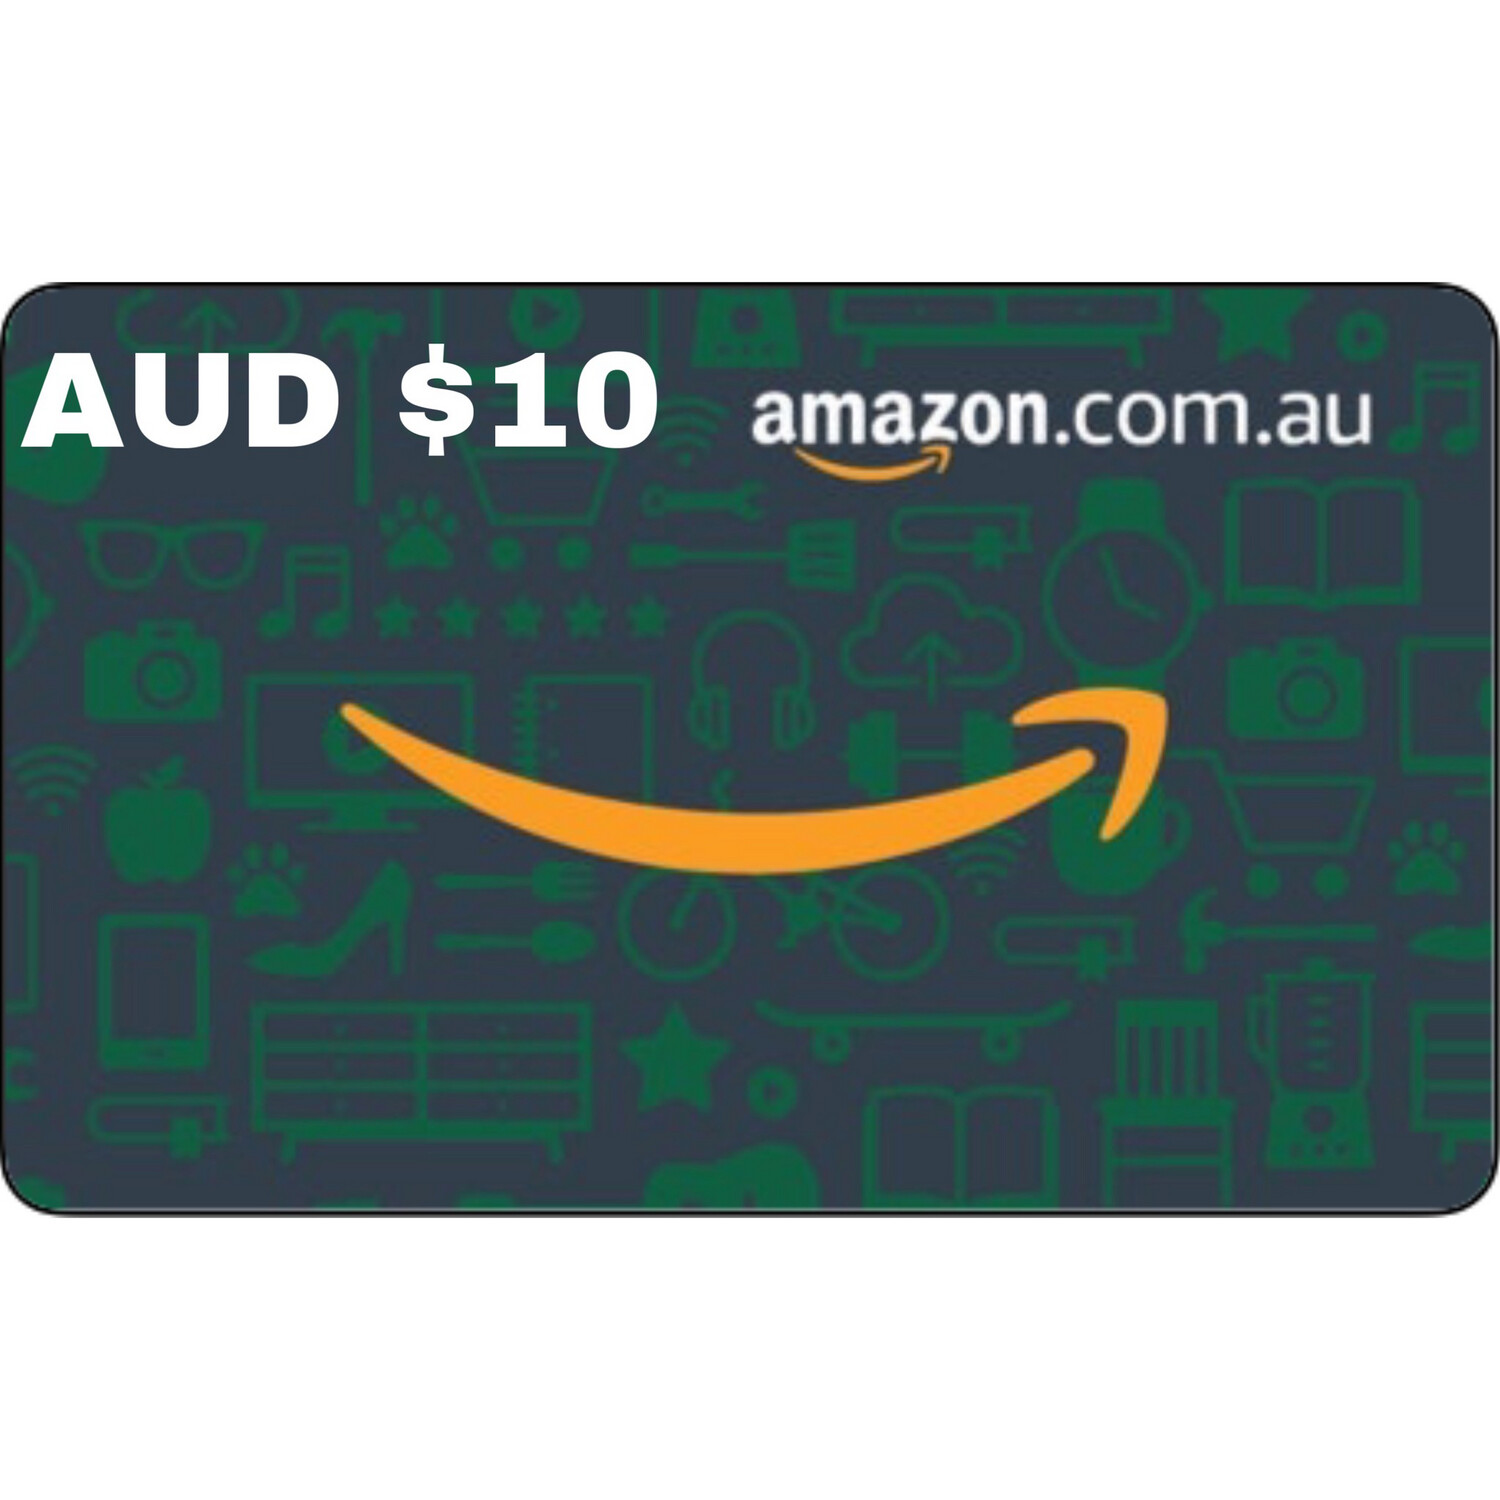 Amazon.com.au Gift Card Australia AUD $10